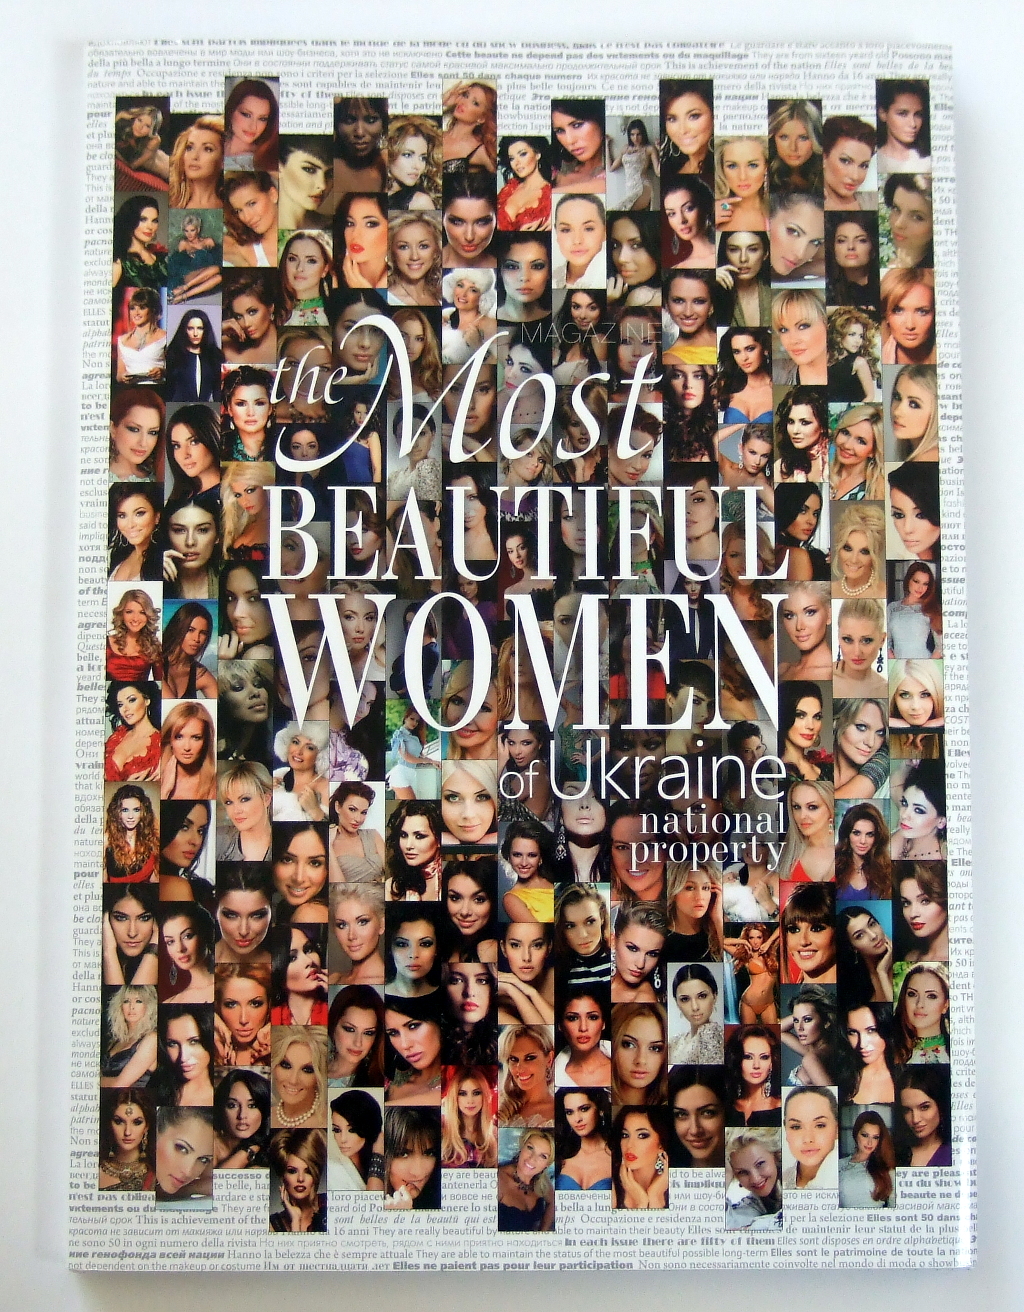 Друк книг «The most beautiful women of Ukraine». Поліграфія друкарні Макрос, виготовлення книг, специфікація 965982-1